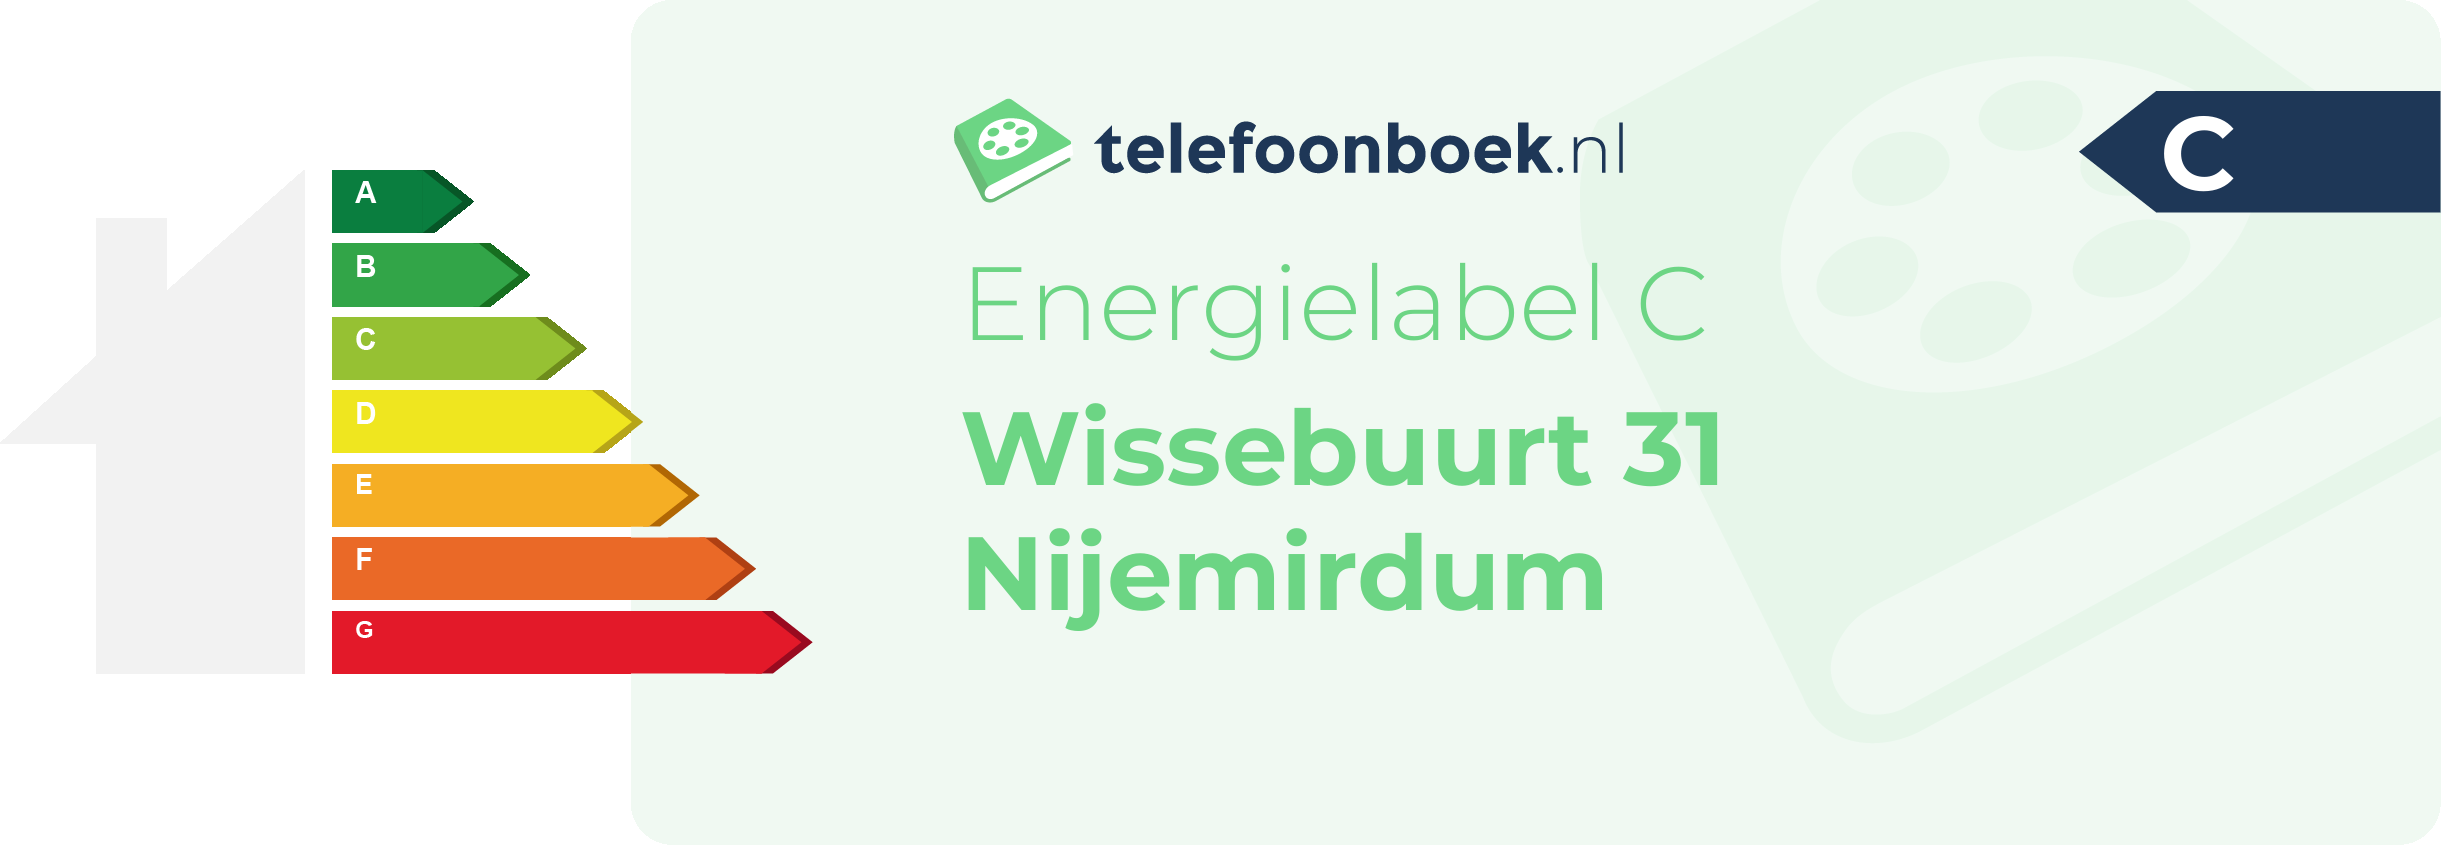 Energielabel Wissebuurt 31 Nijemirdum